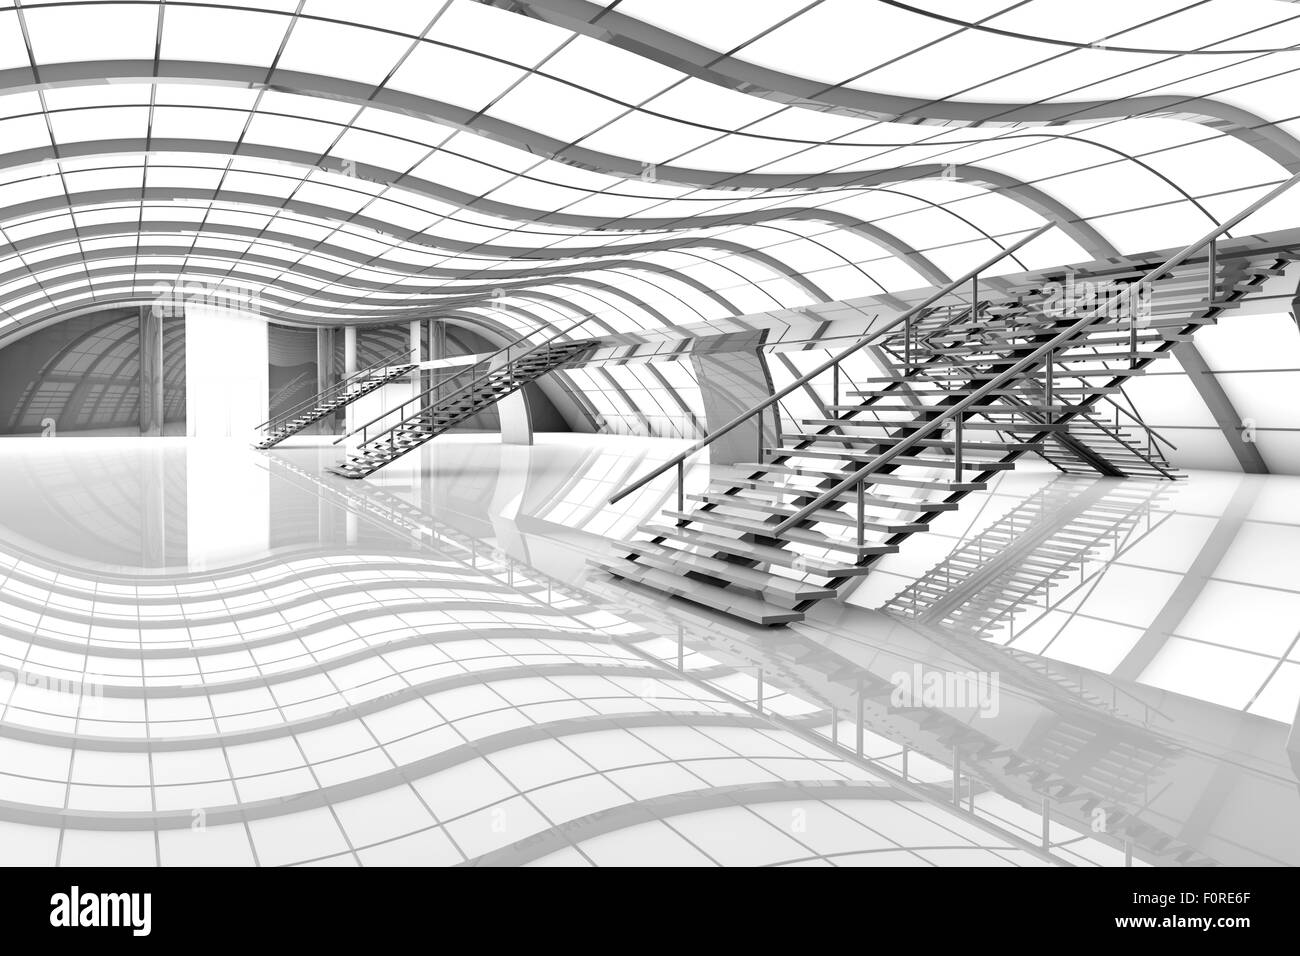 3D architecture visualization of a futuristic airport interior. Stock Photo